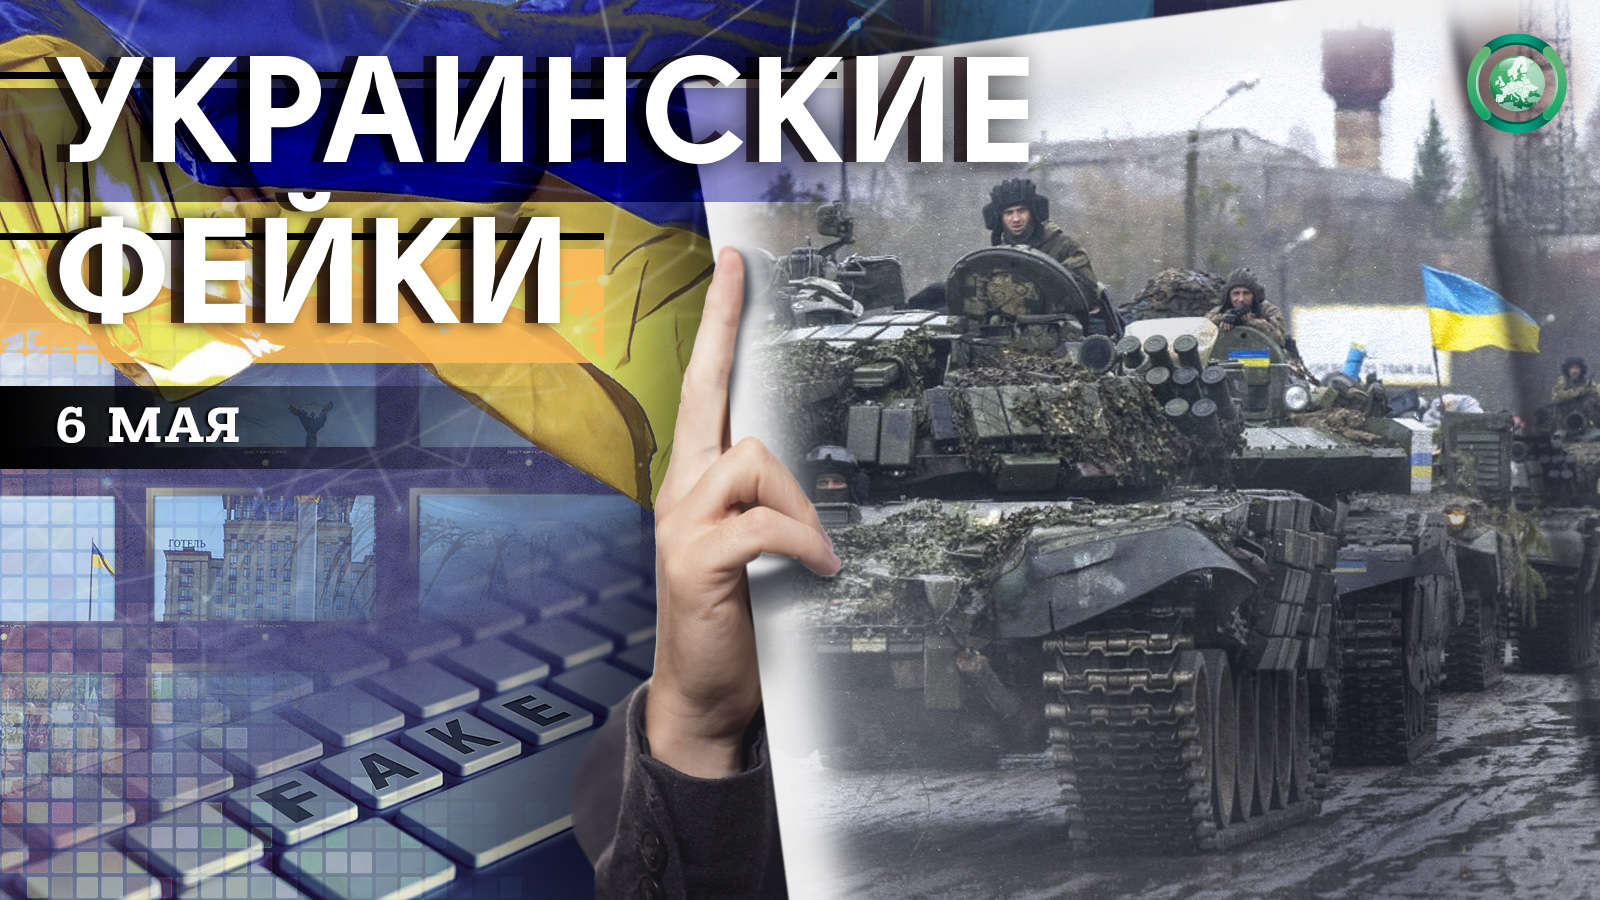 Поджог автомобилей и мобилизация — какие фейки распространили на Украине 6 мая Весь мир